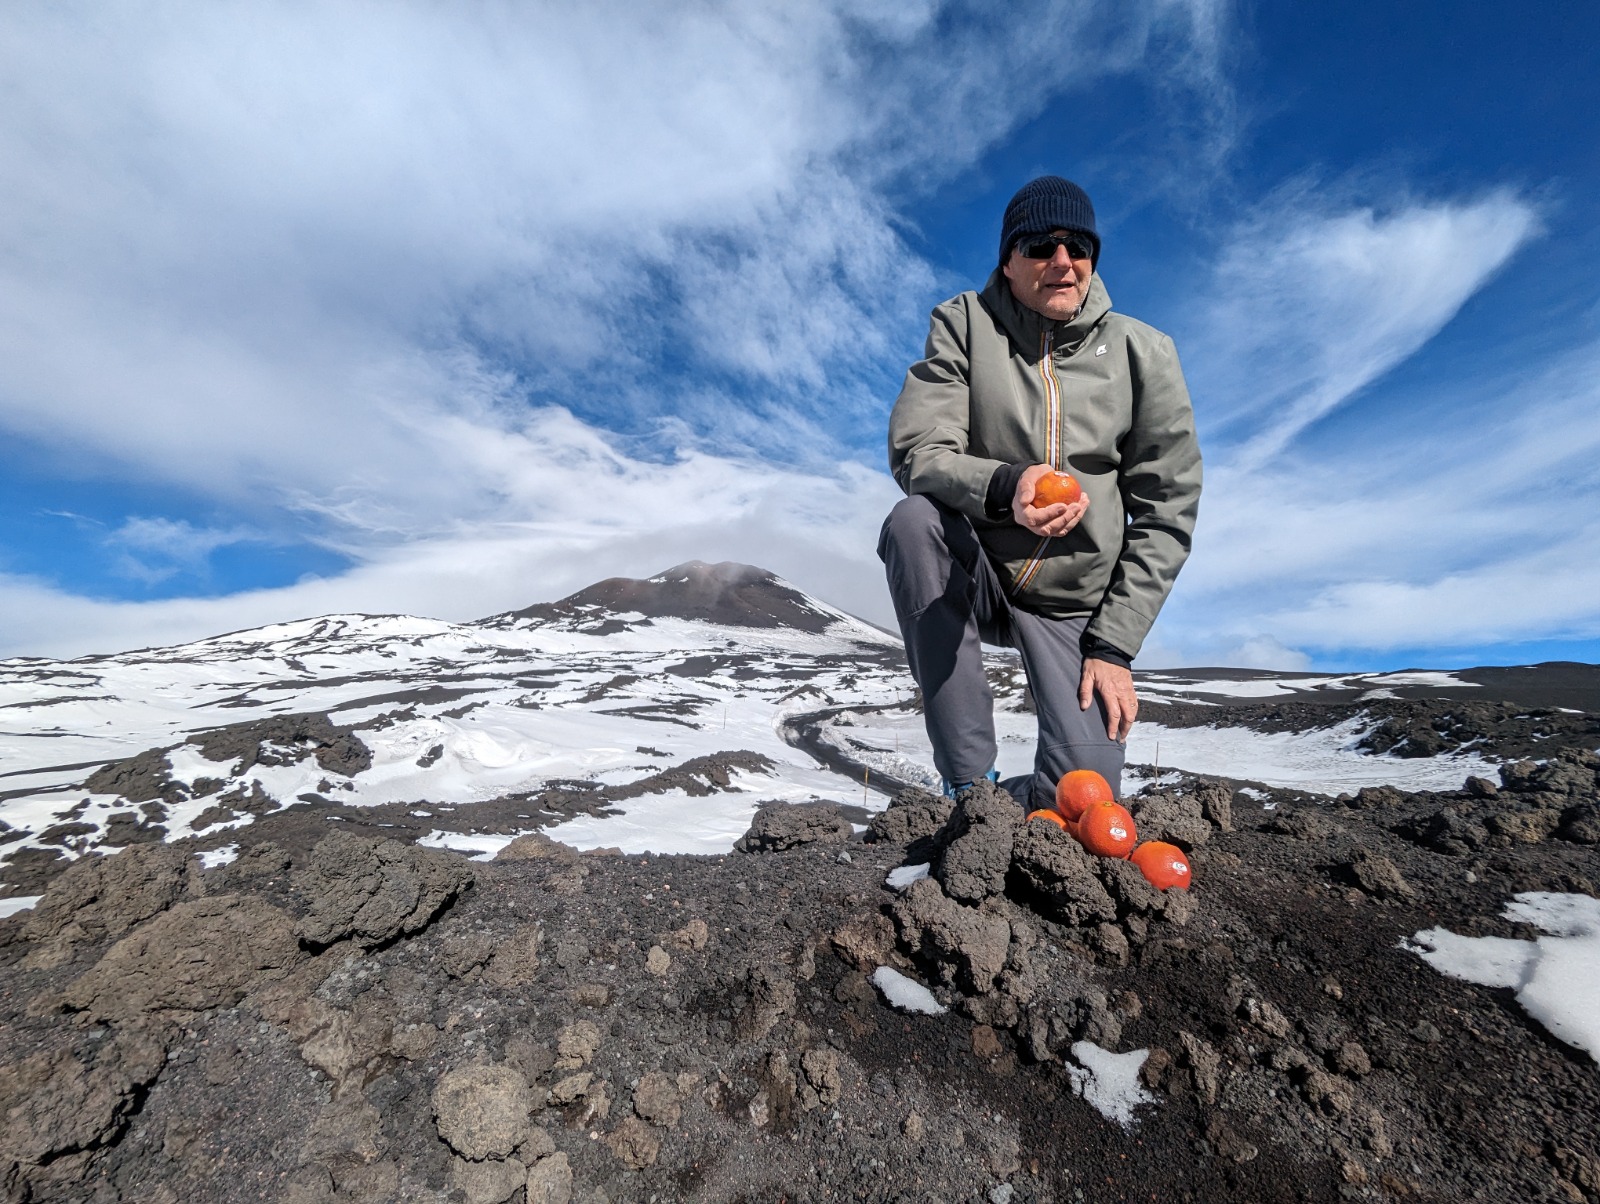 Arancia Rossa di Sicilia Igp a quota 2810 metri, Diana: “Legame indissolubile tra il vulcano e l’arancia rossa” CLICCA PER IL VIDEO